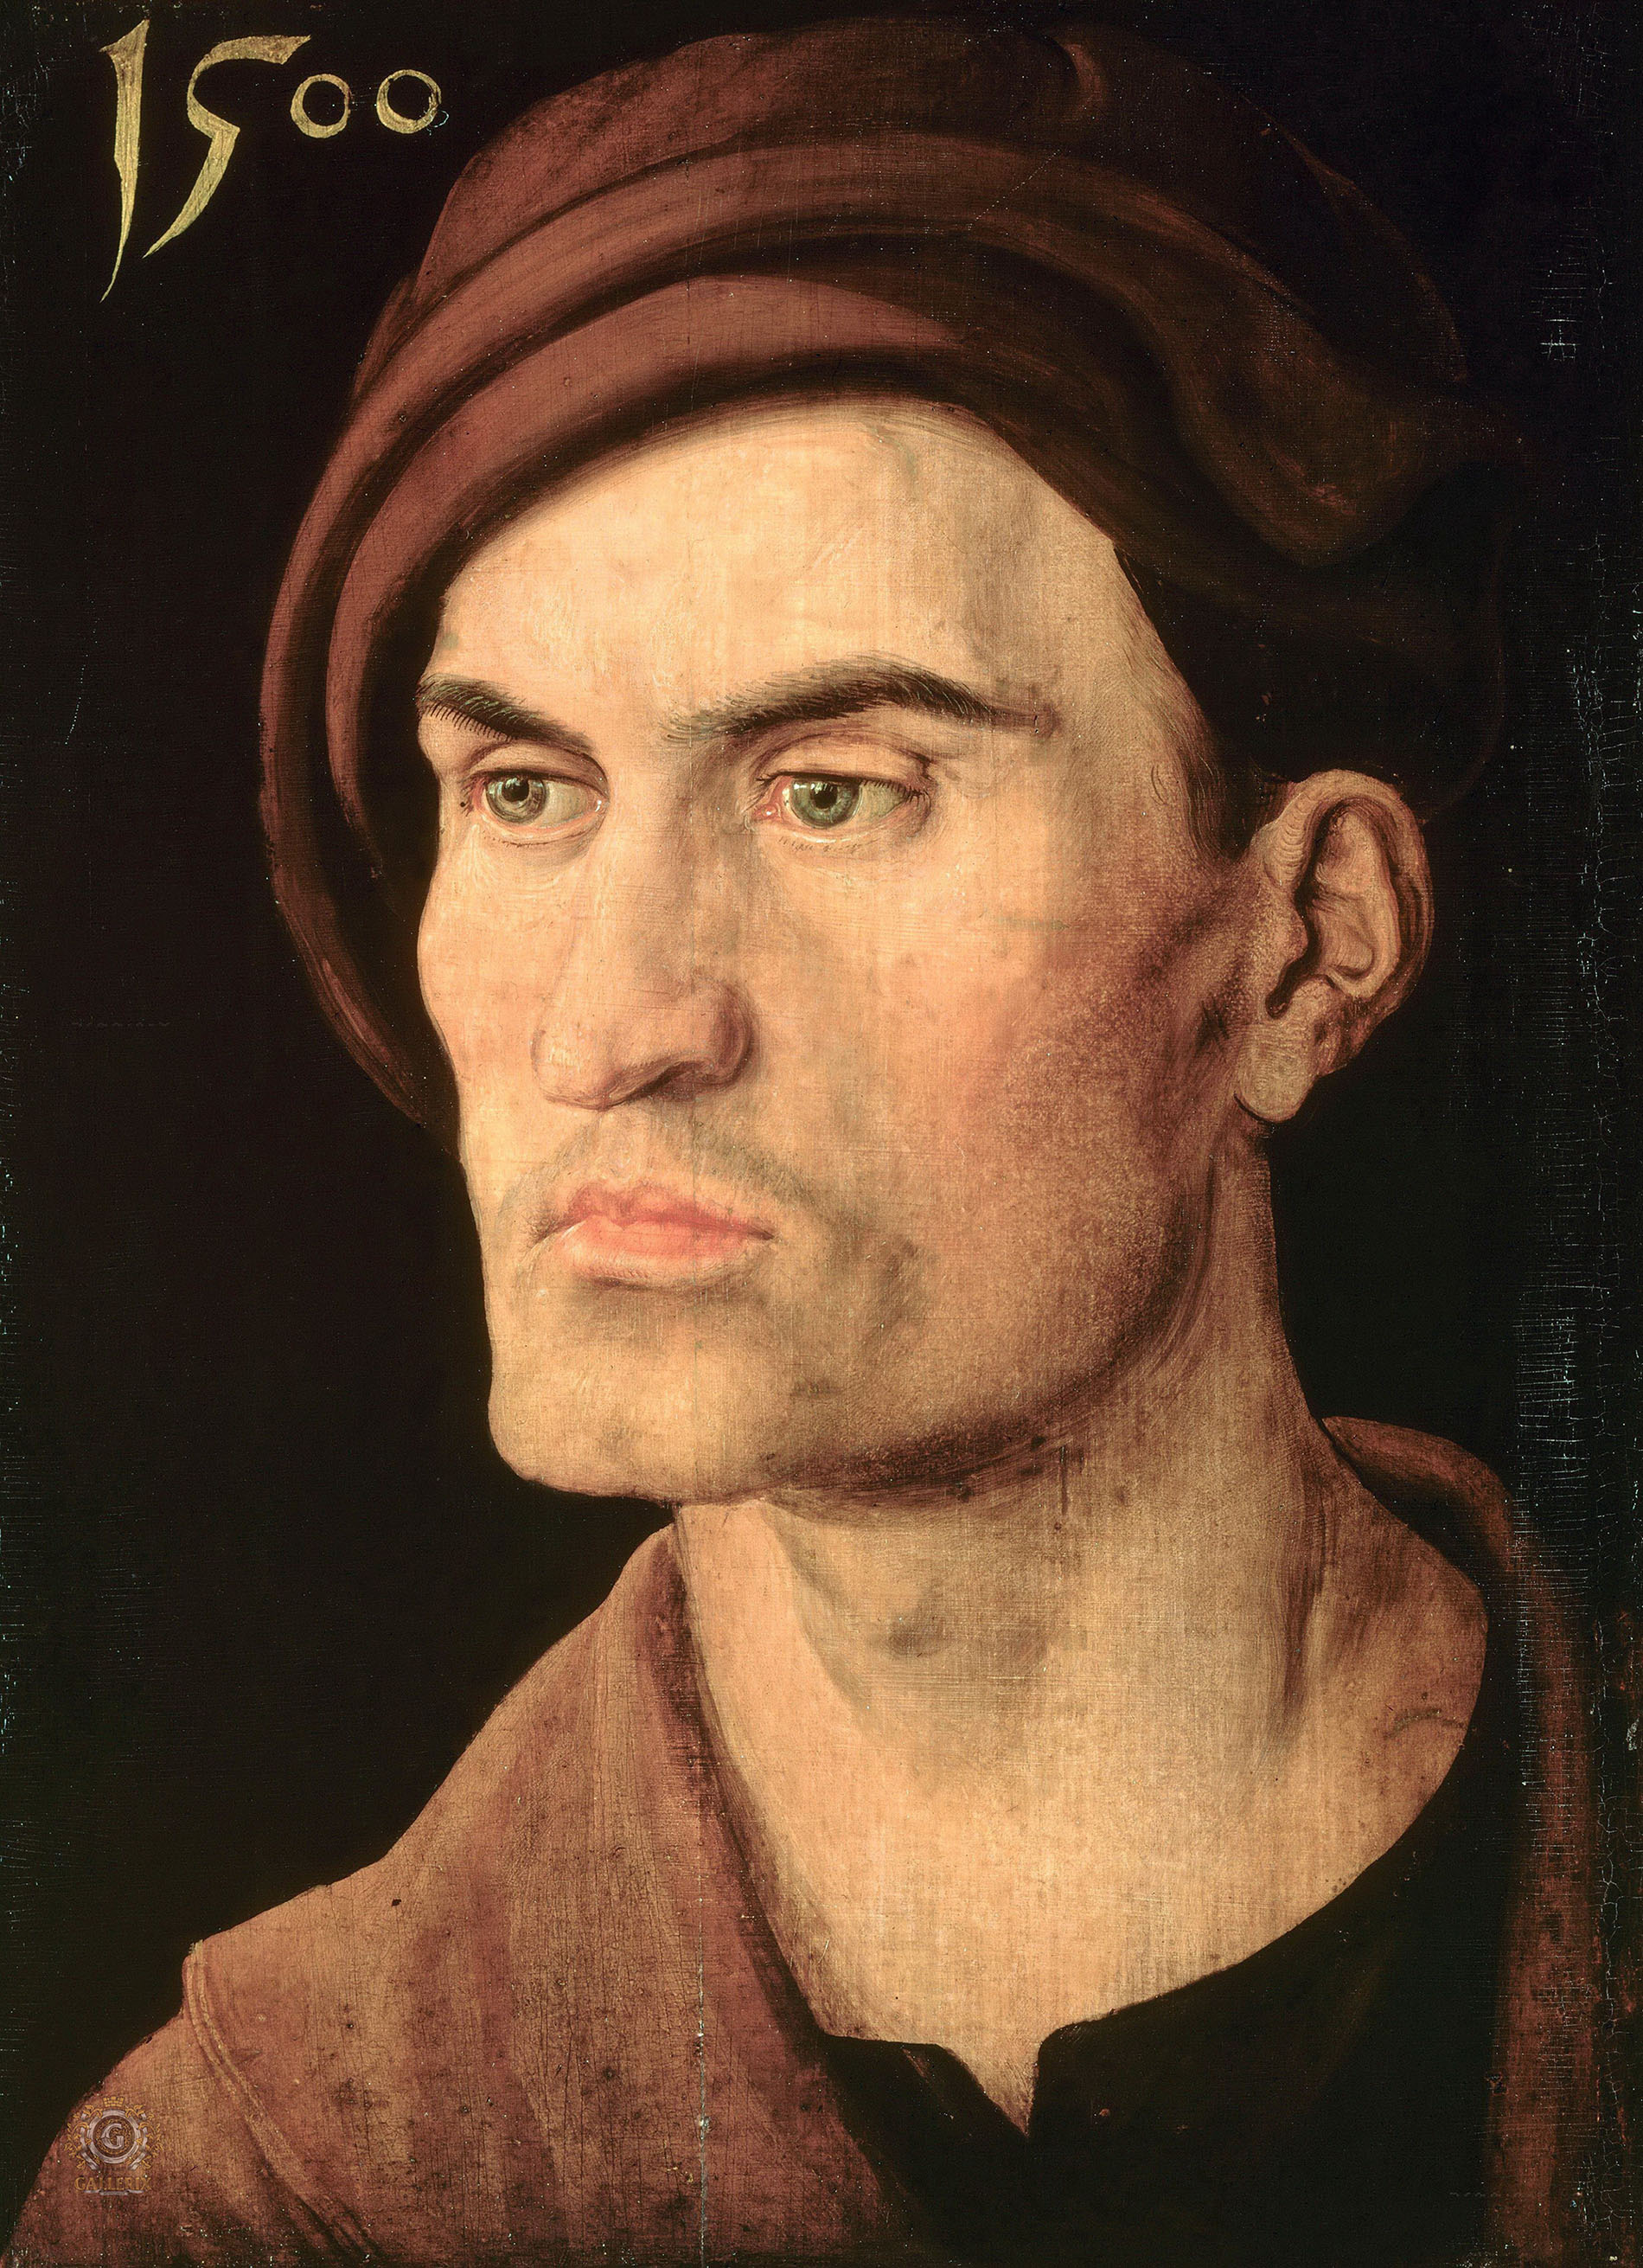 Альбрехт Дюрер. "Мужской портрет". 1500. Старая Пинакотека, Мюнхен.